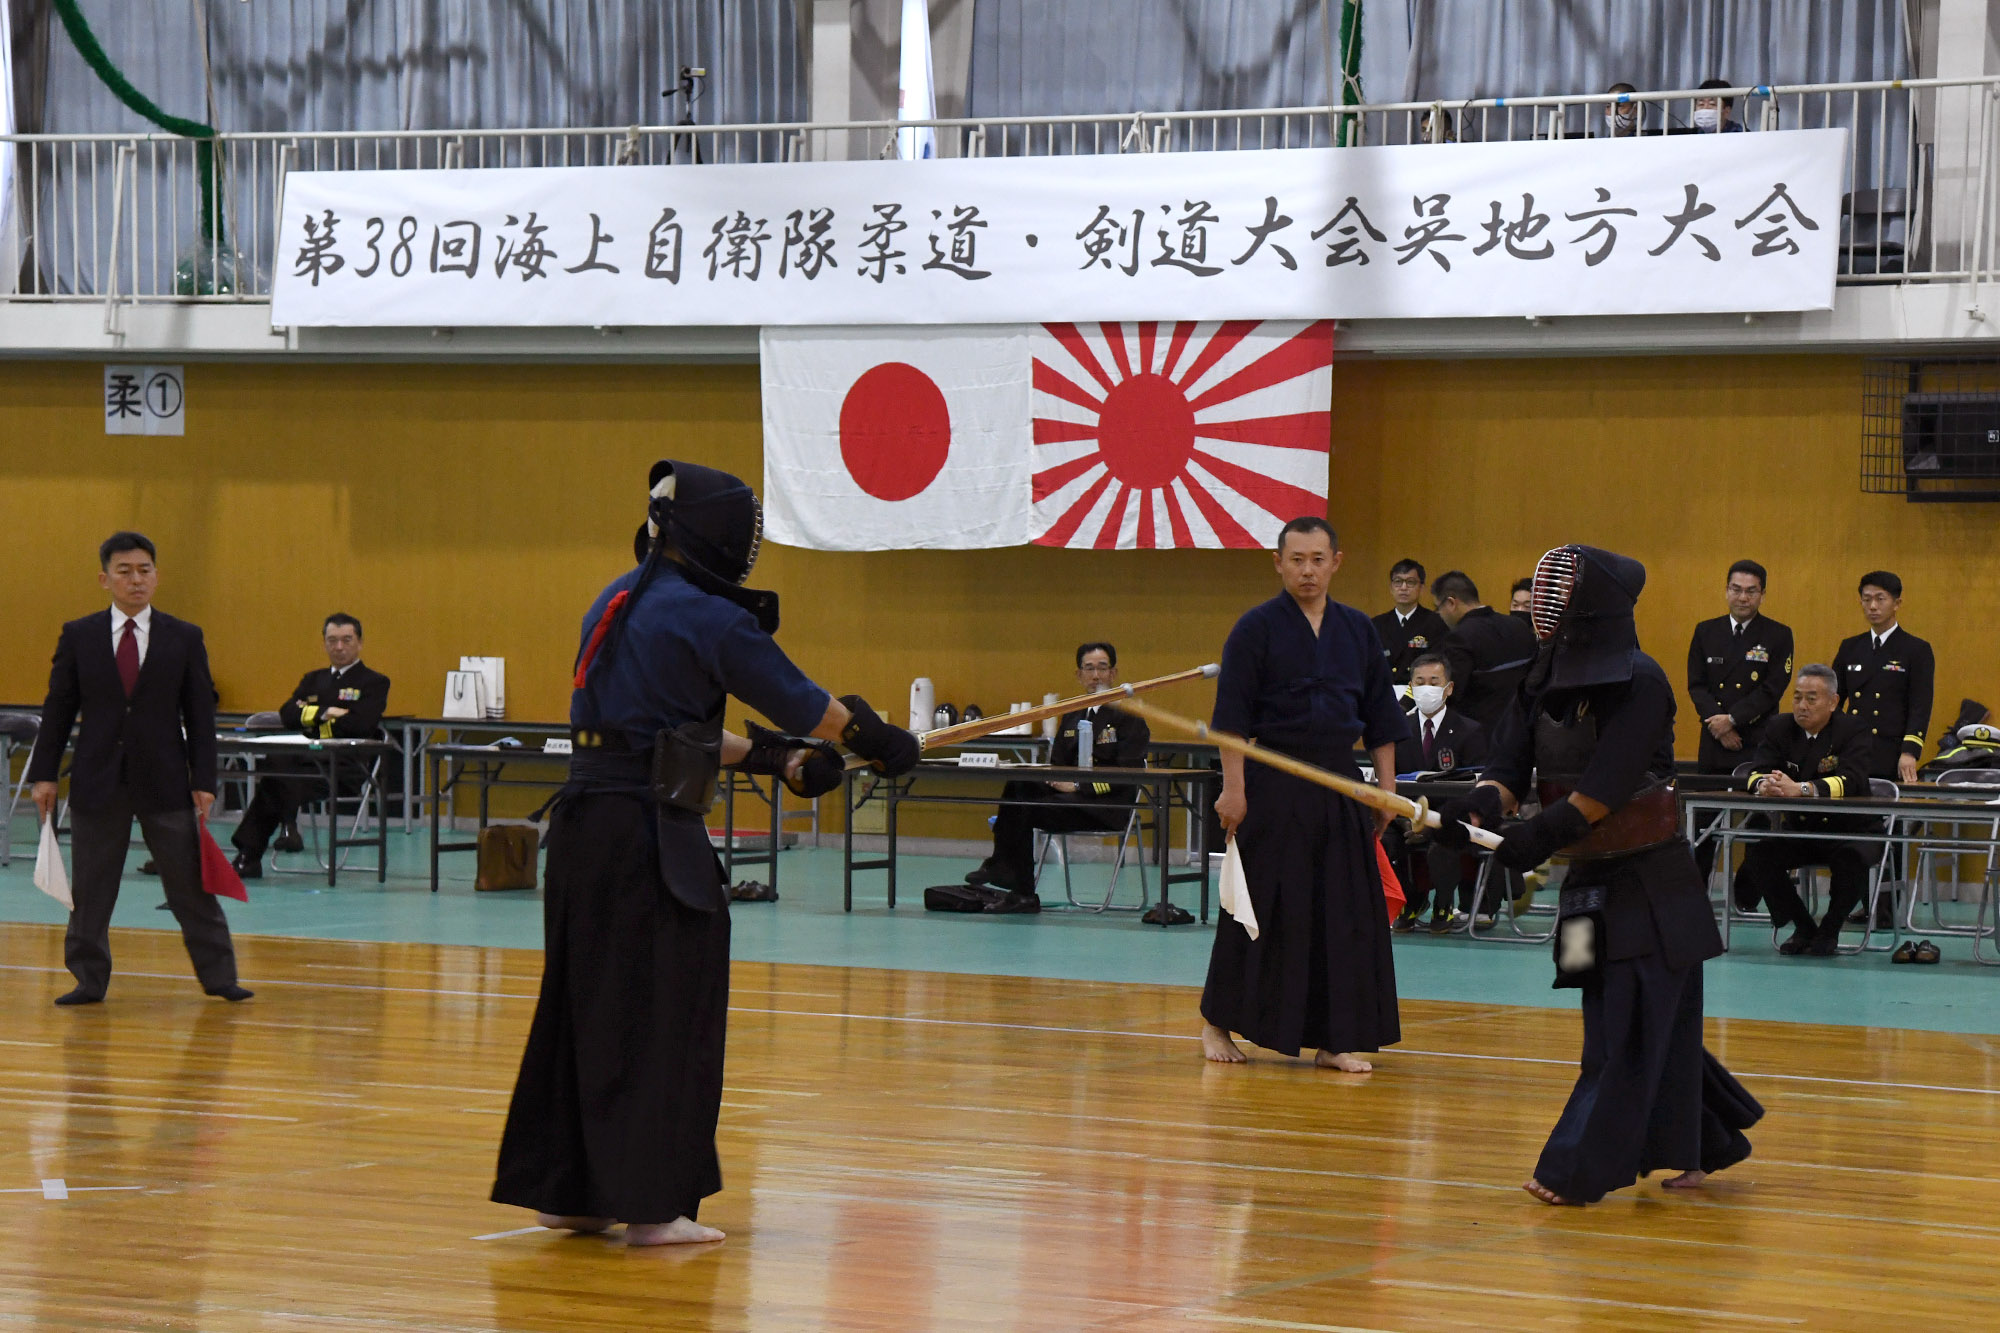 剣道大会 個人戦